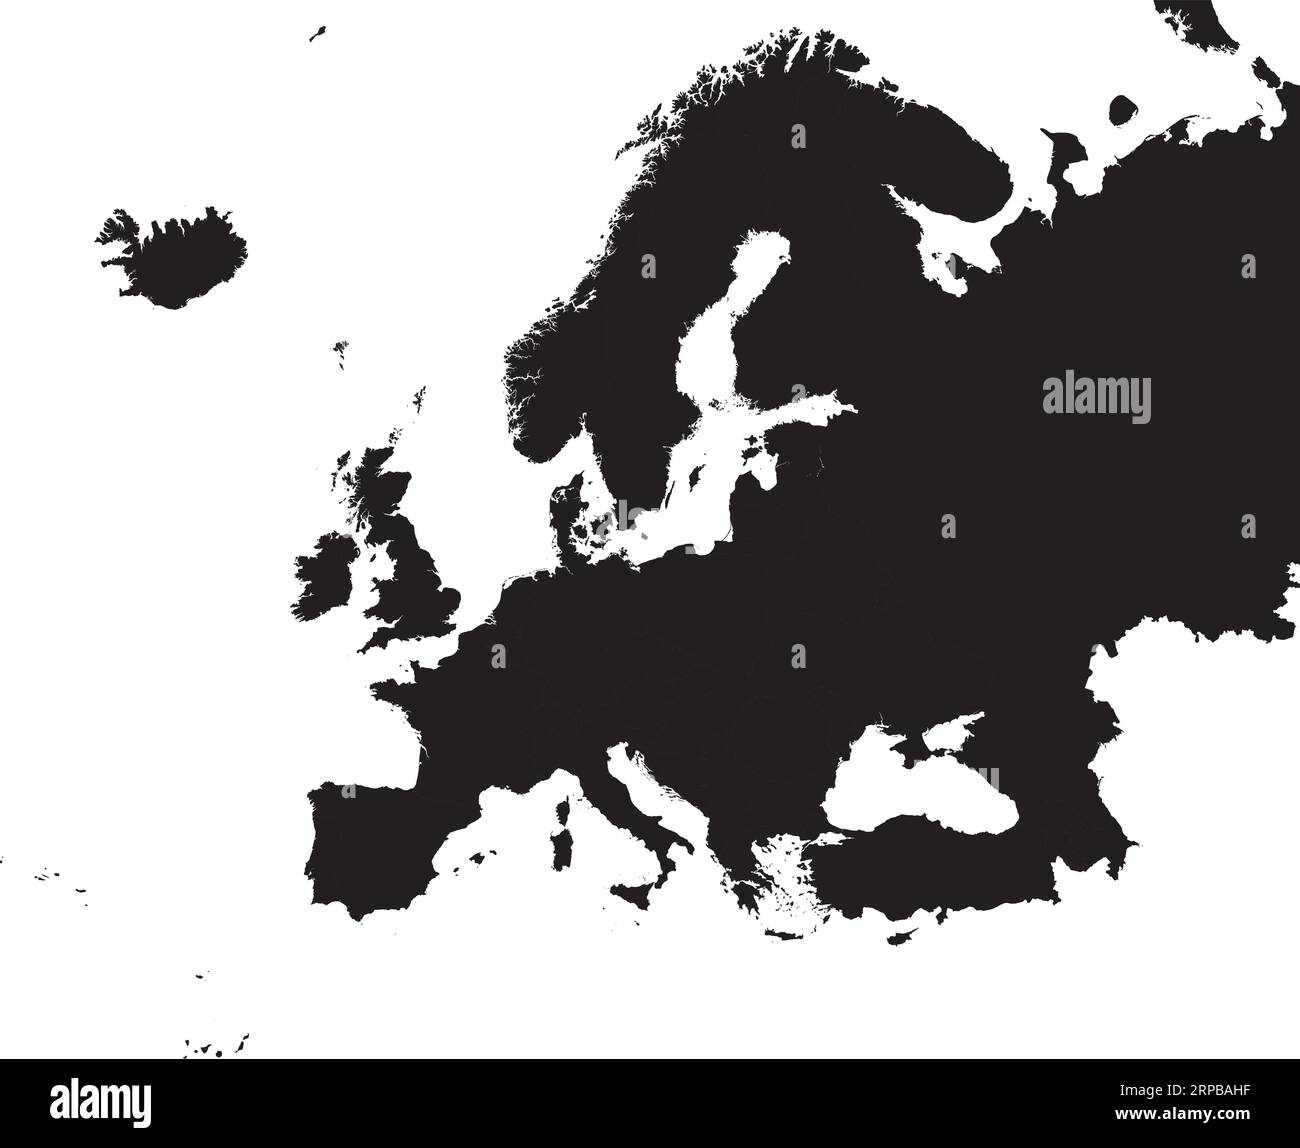 Carte couleur CMJN NOIR de L'EUROPE Illustration de Vecteur